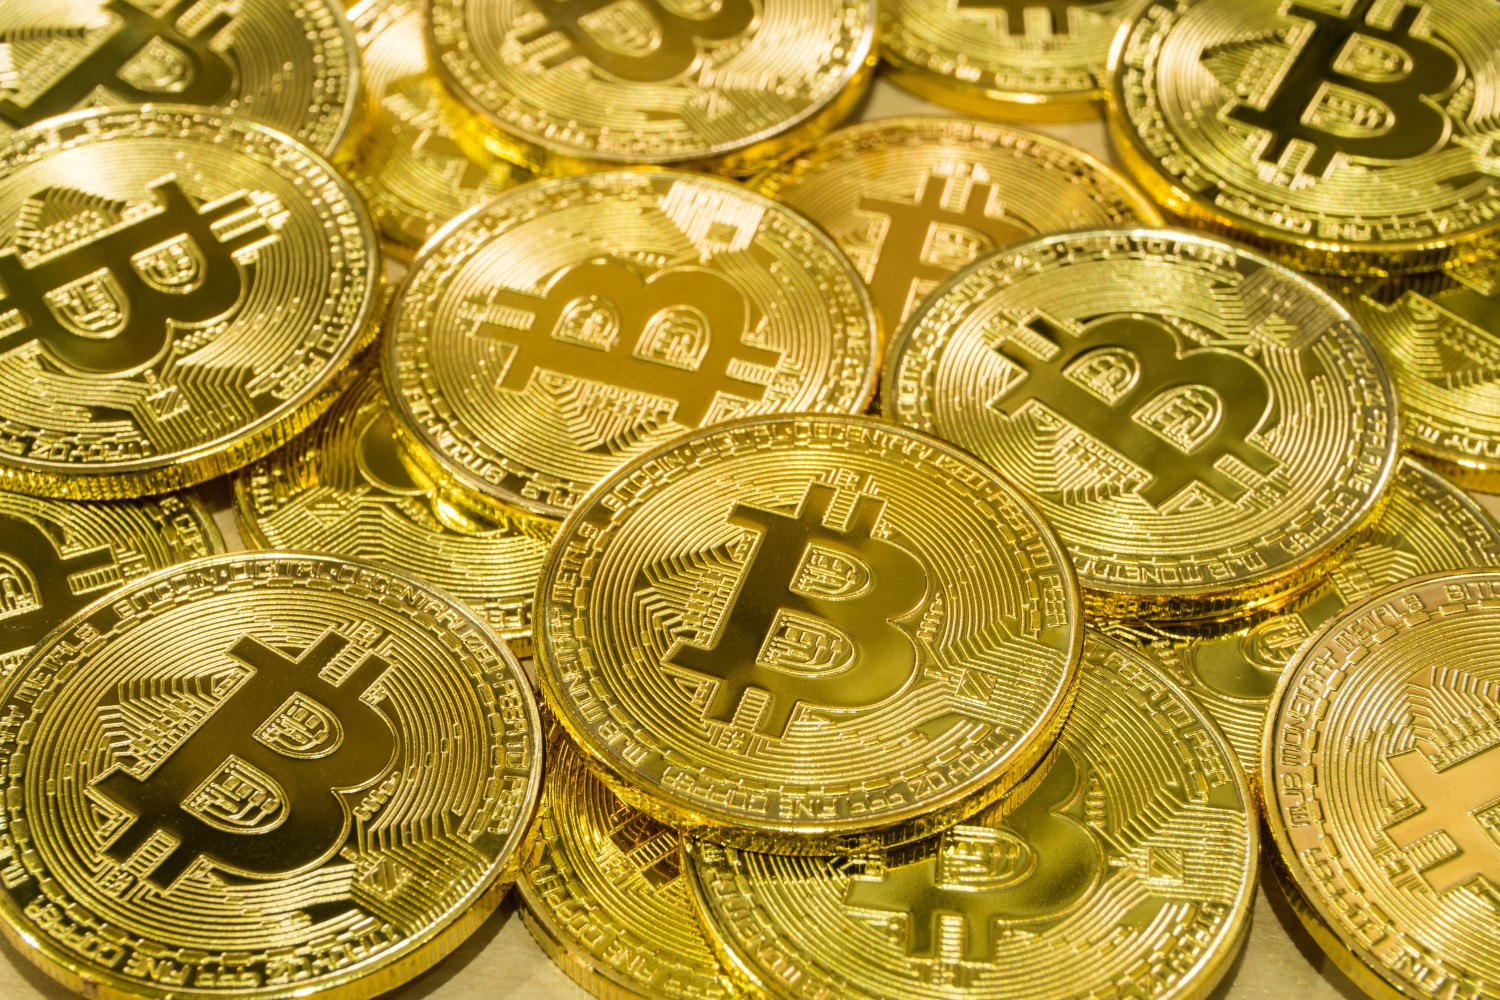 Cât trebuie să investesc în bitcoin pentru a câștiga bani